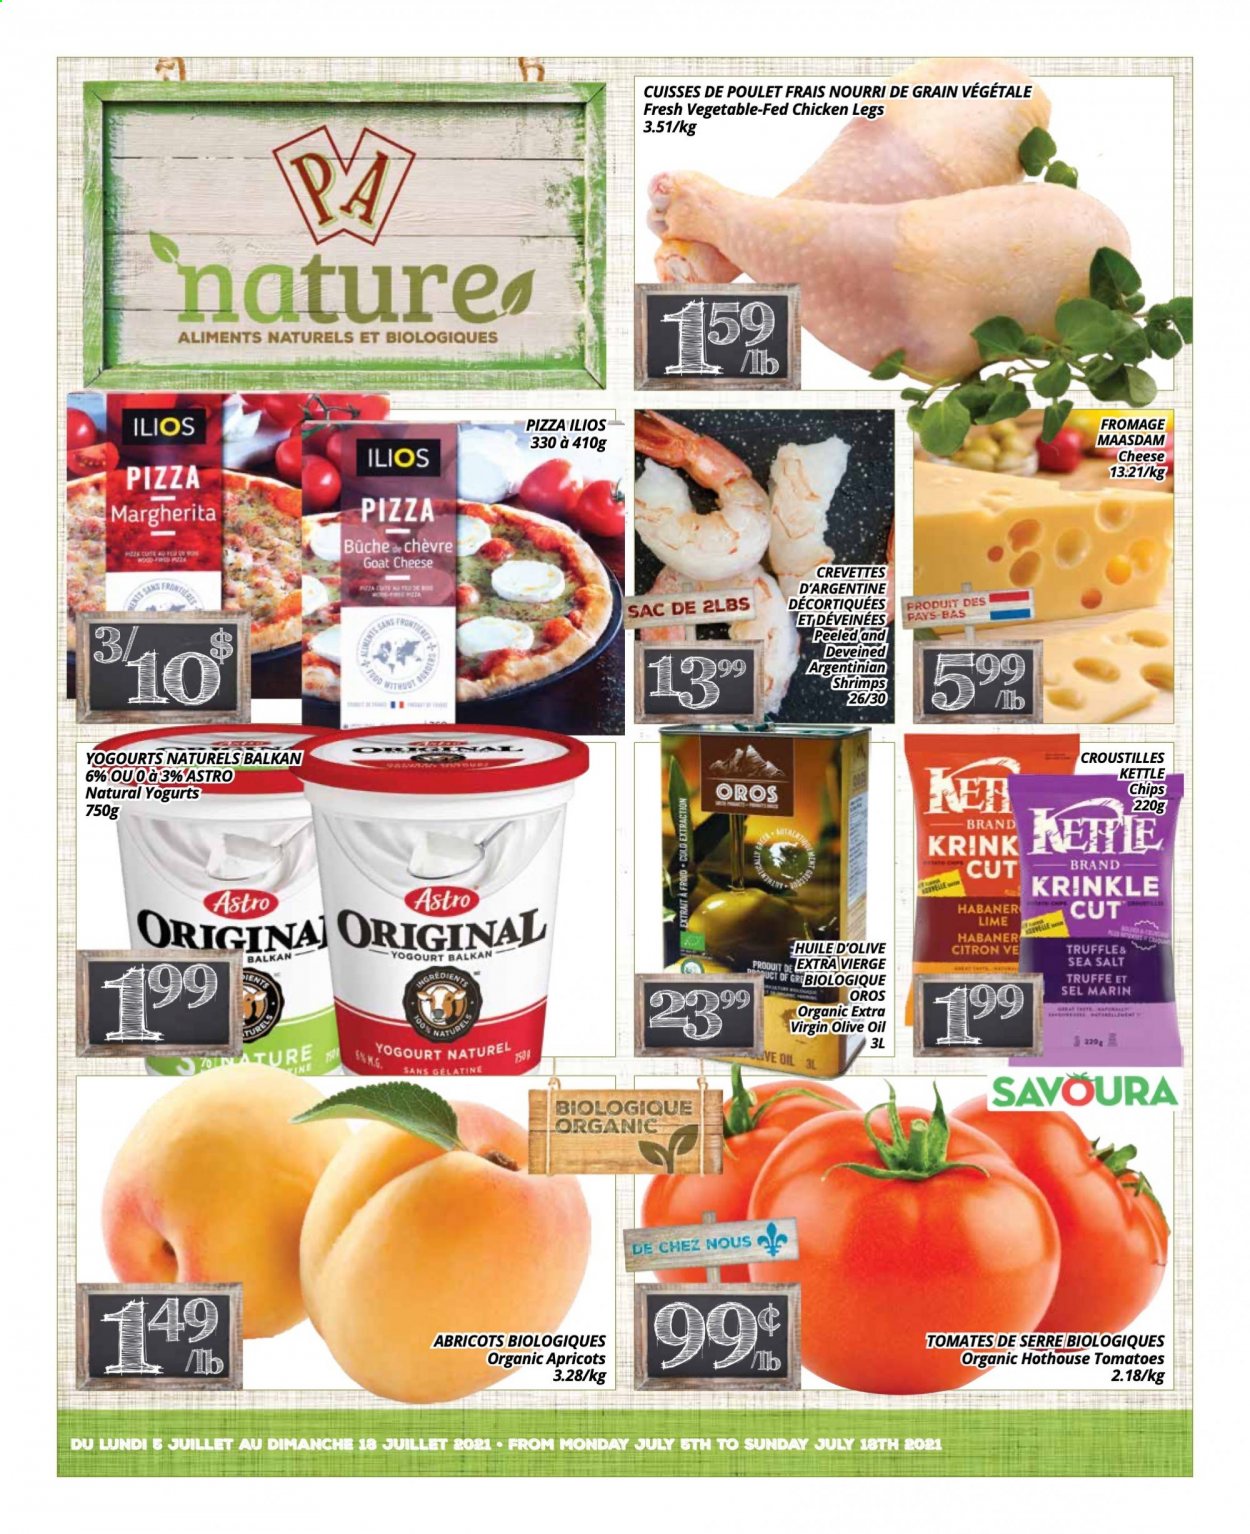 thumbnail - Circulaire PA Nature - 05 Juillet 2021 - 18 Juillet 2021 - Produits soldés - abricots, citron, cuisses de poulet, viande de poulet, chips, huile d'olive, crevettes, gélatine, huile, sel. Page 1.